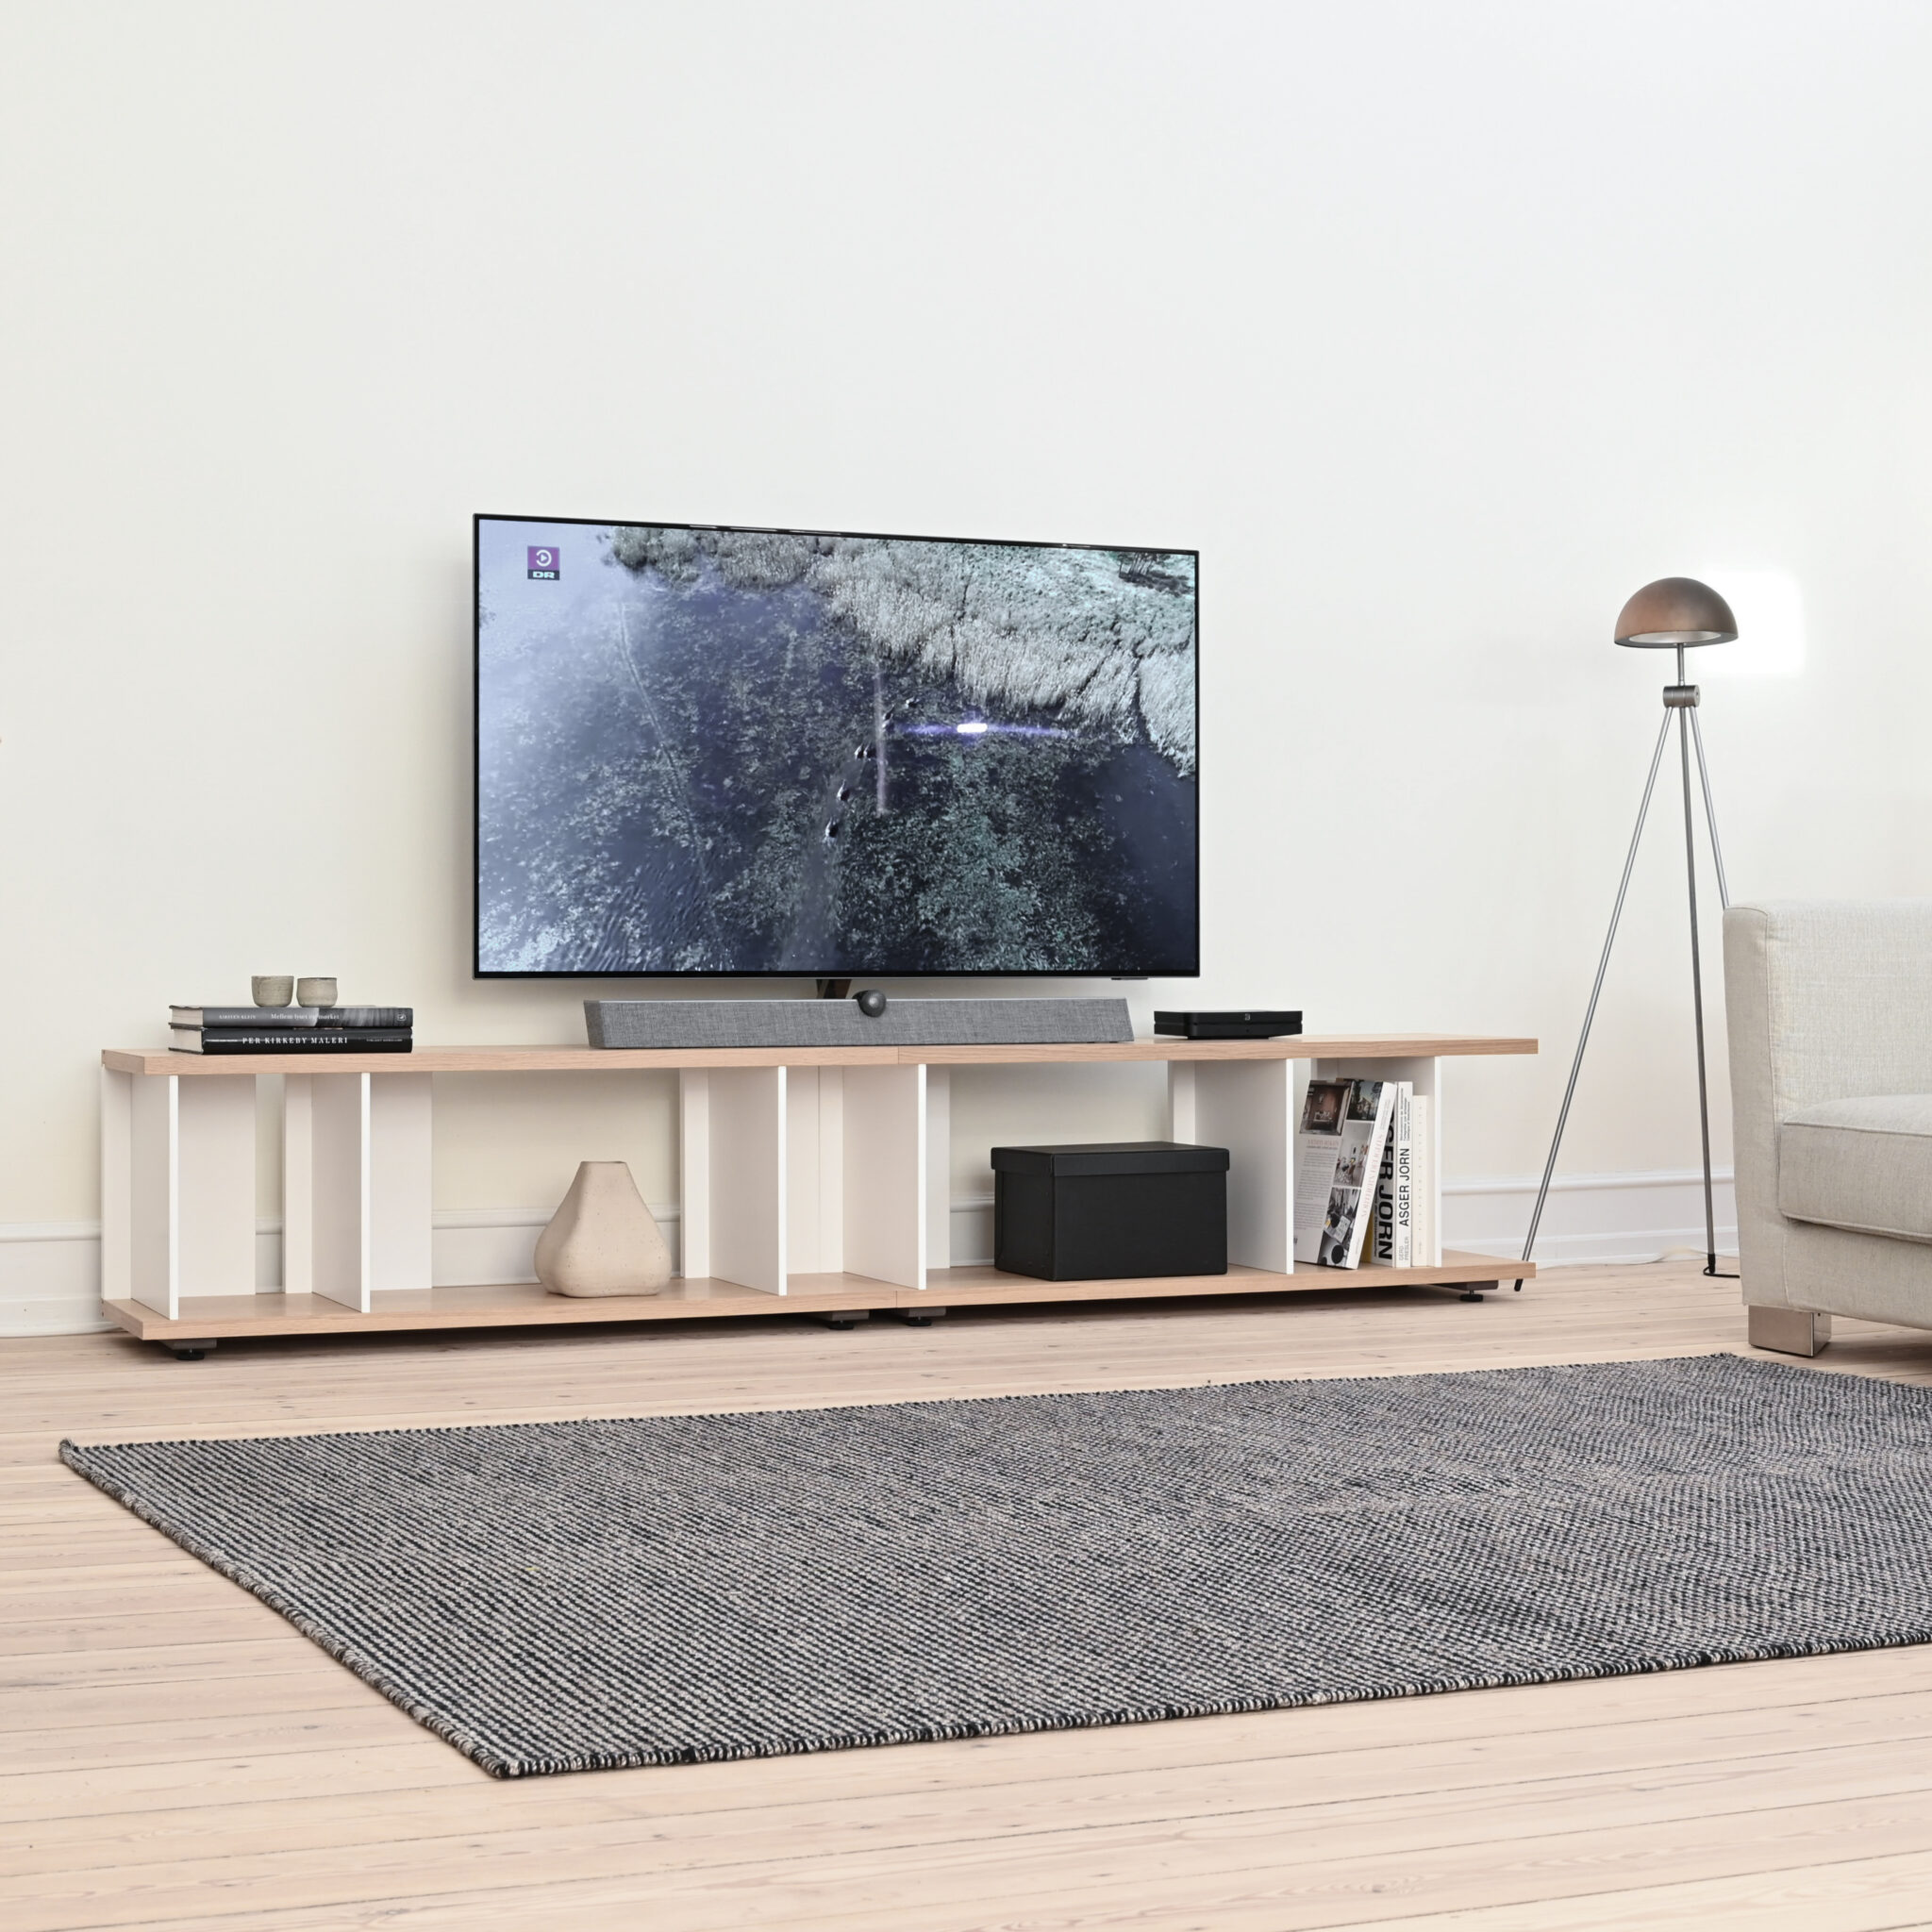 Mellemstor tv reol design konfiguration 7 variant indretning stående i en stue